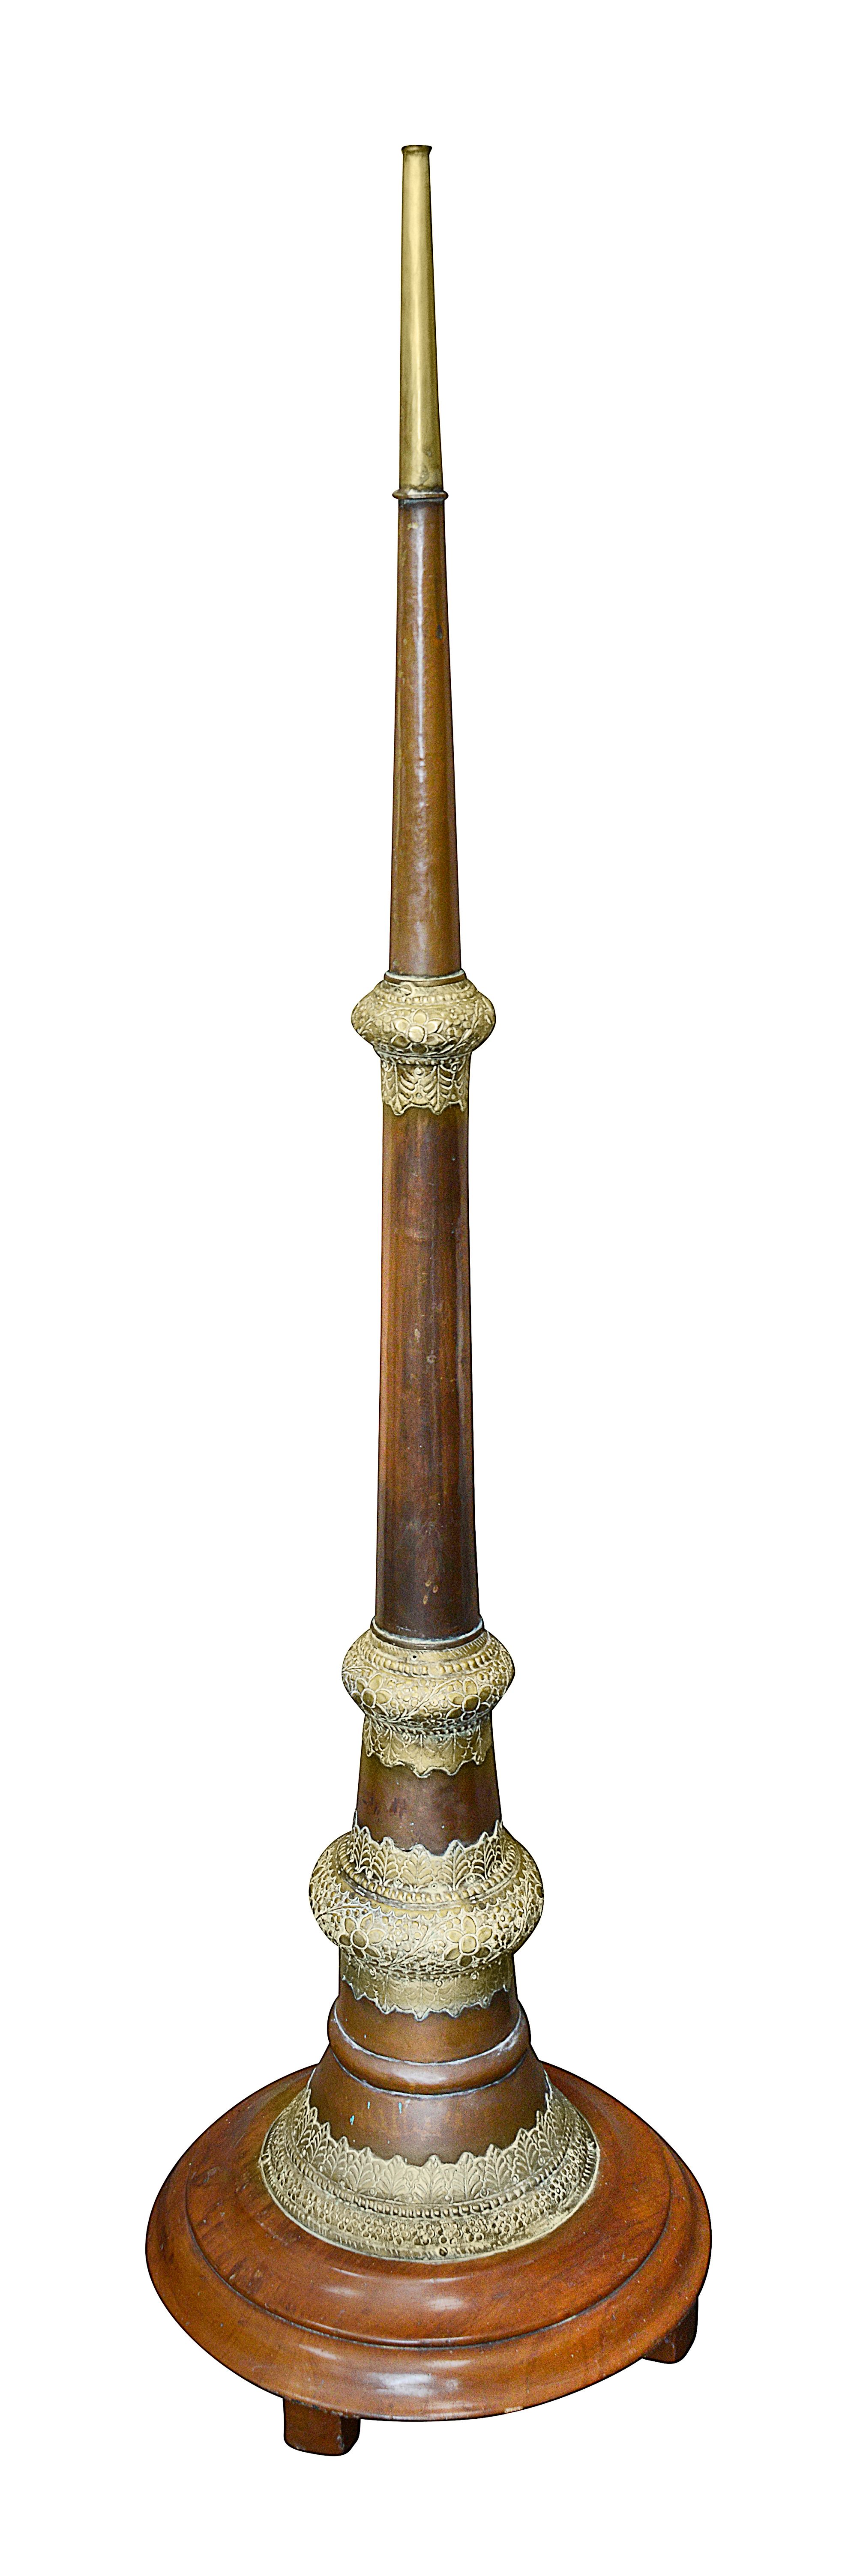 A Tibetan copper and brass Dungchen horn